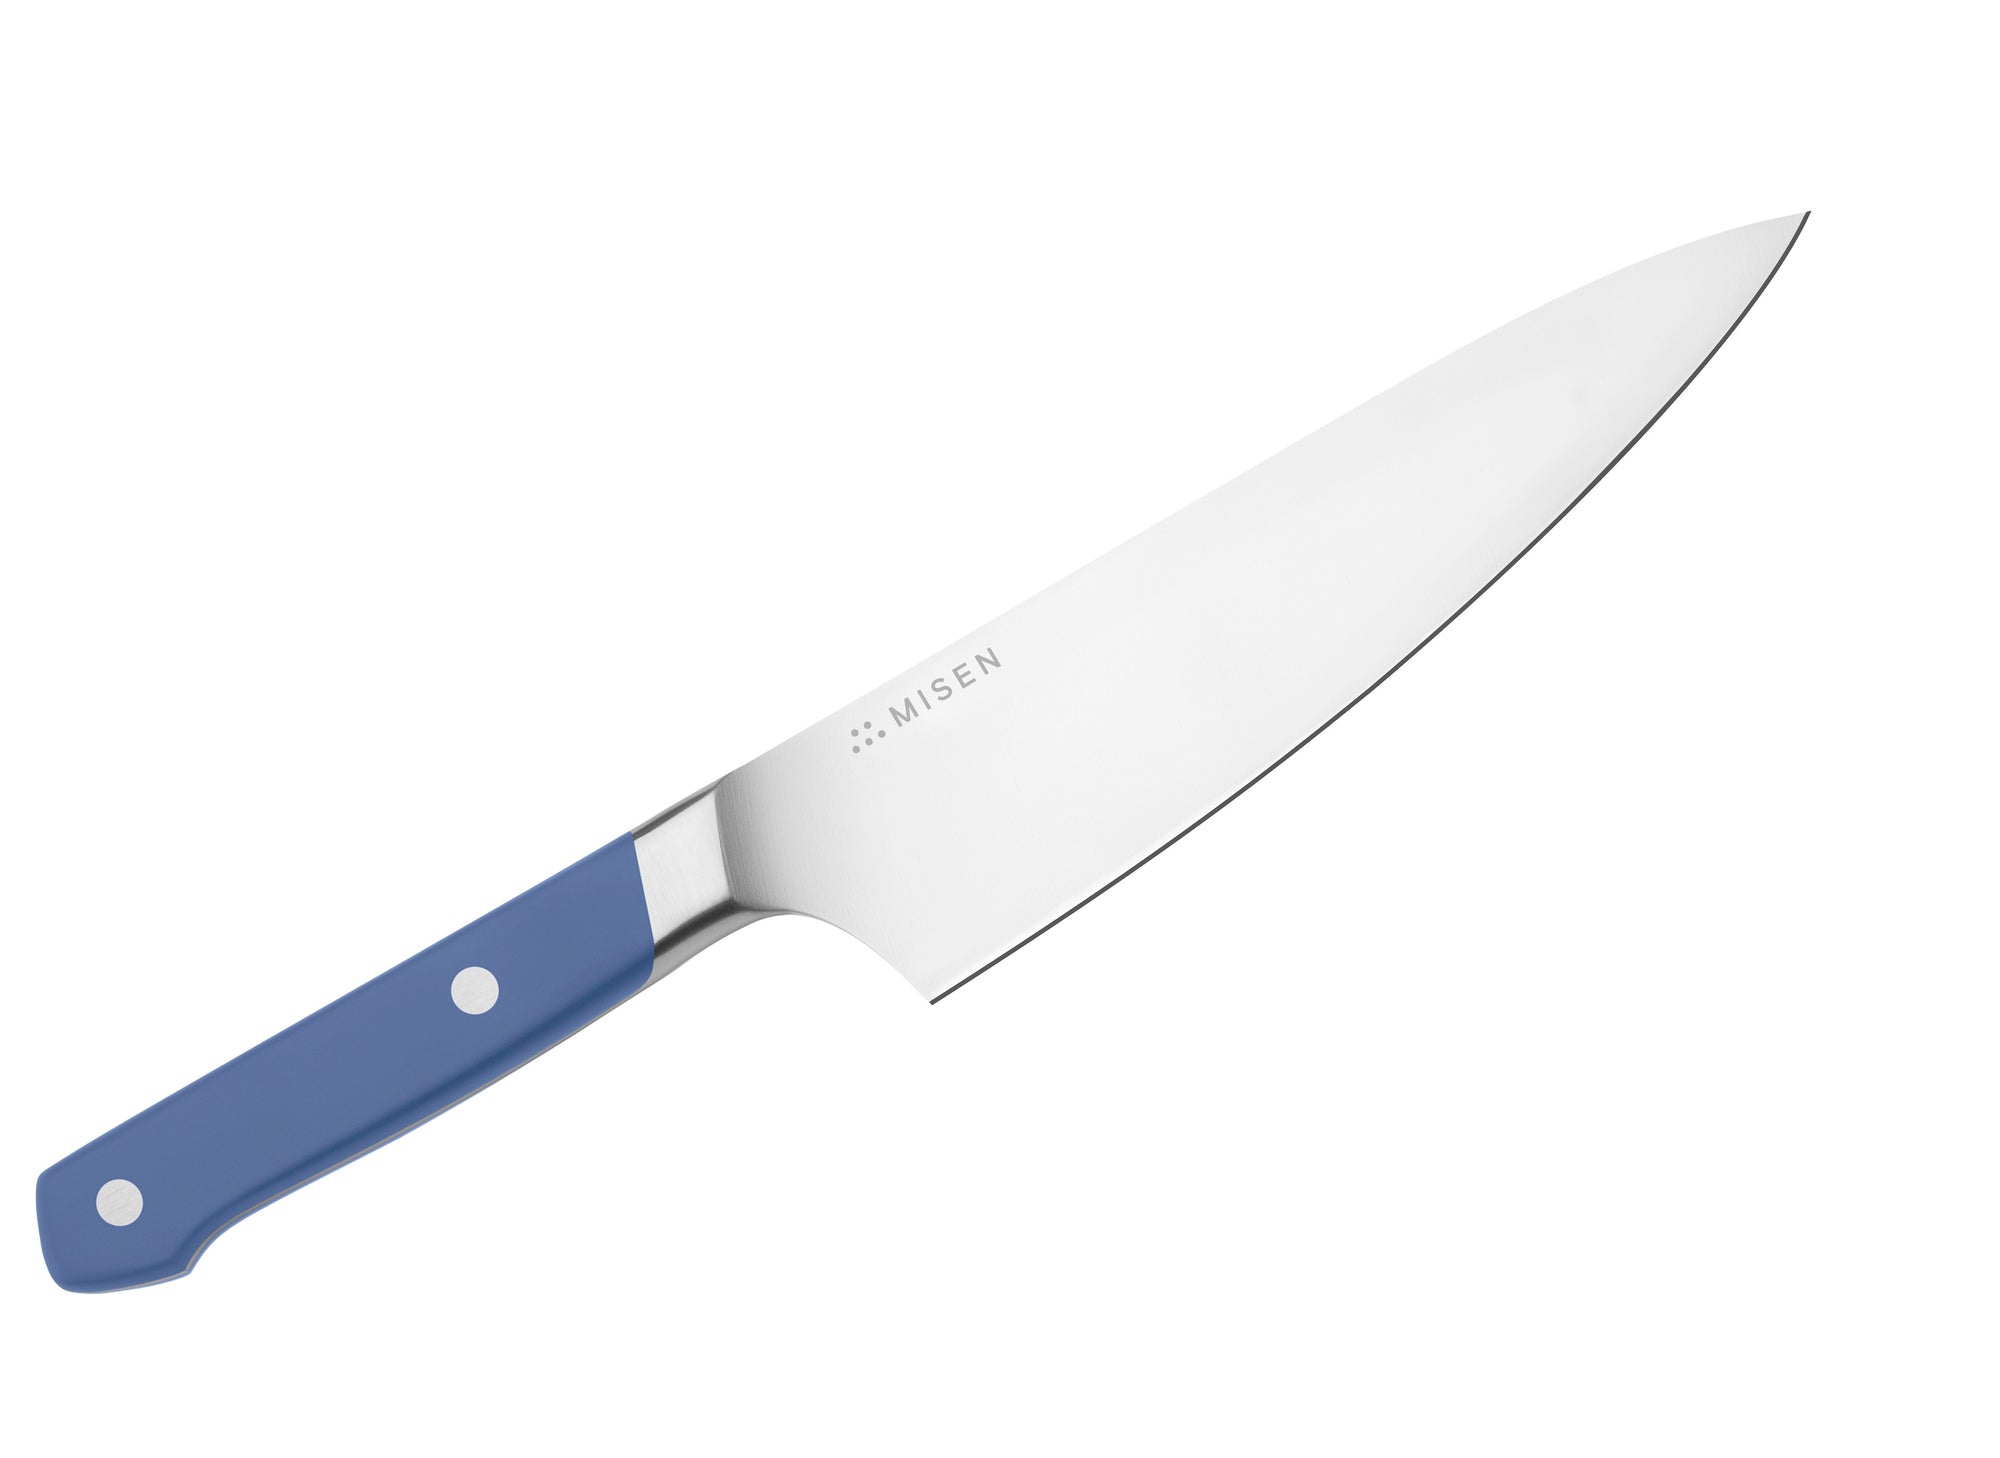 Misen Short Chef's Knife in blue